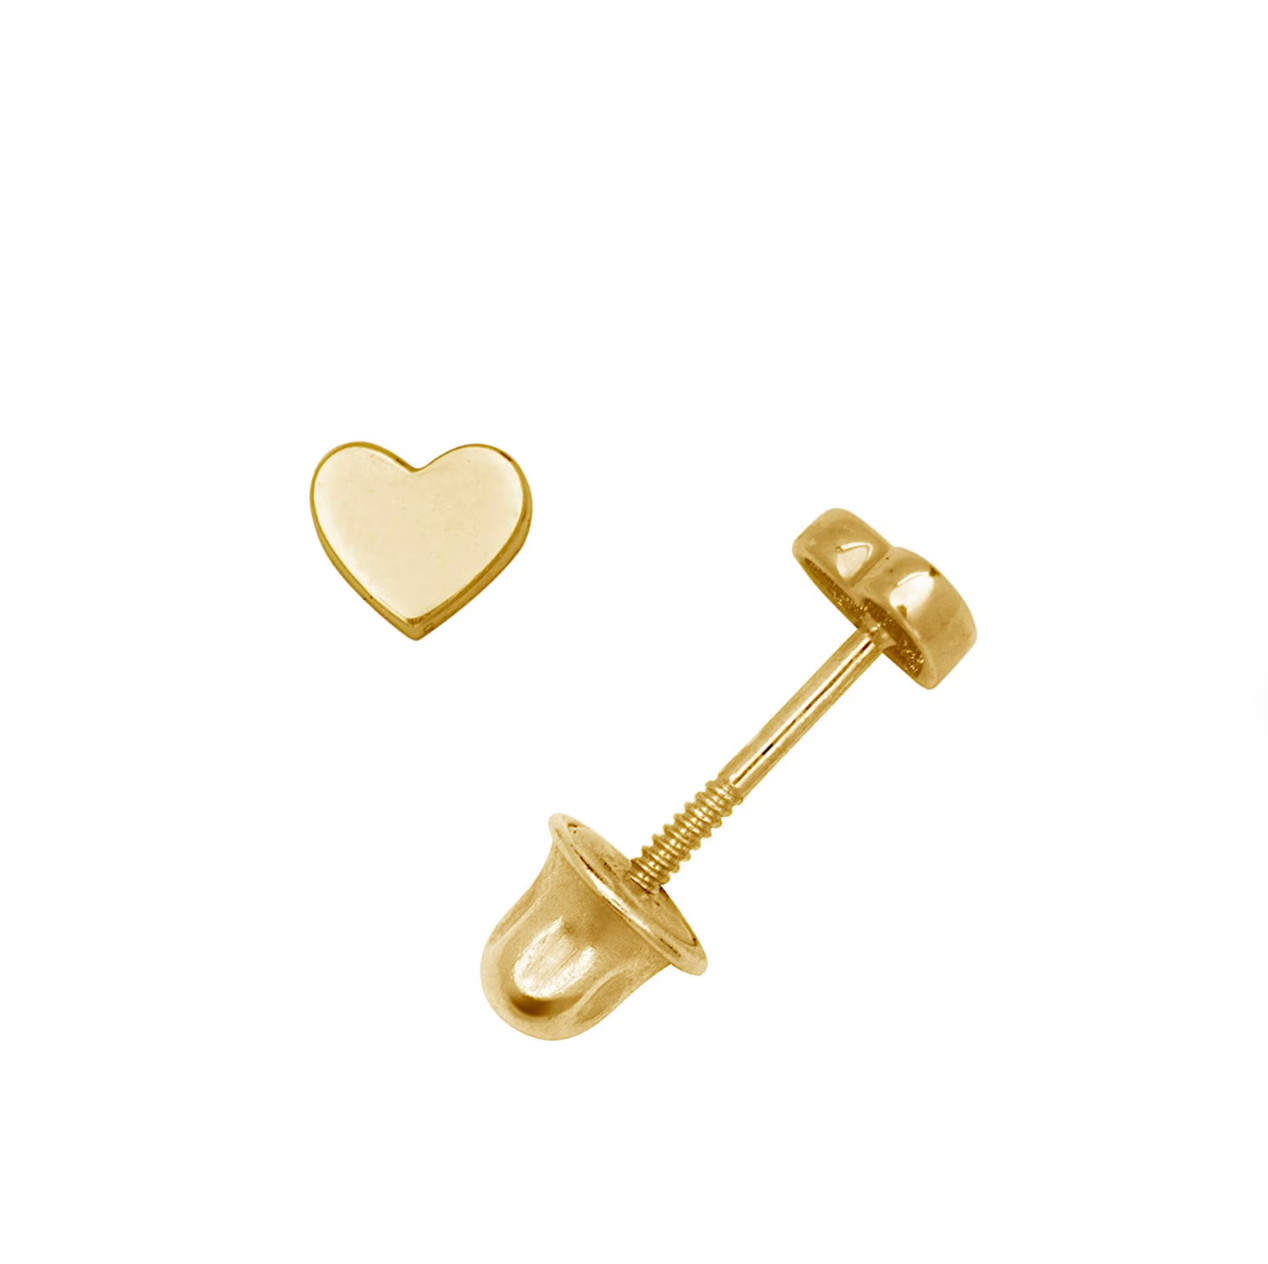 Heart Shape Studs Minimalist 14K Solid Gold Earrings - BEYOND